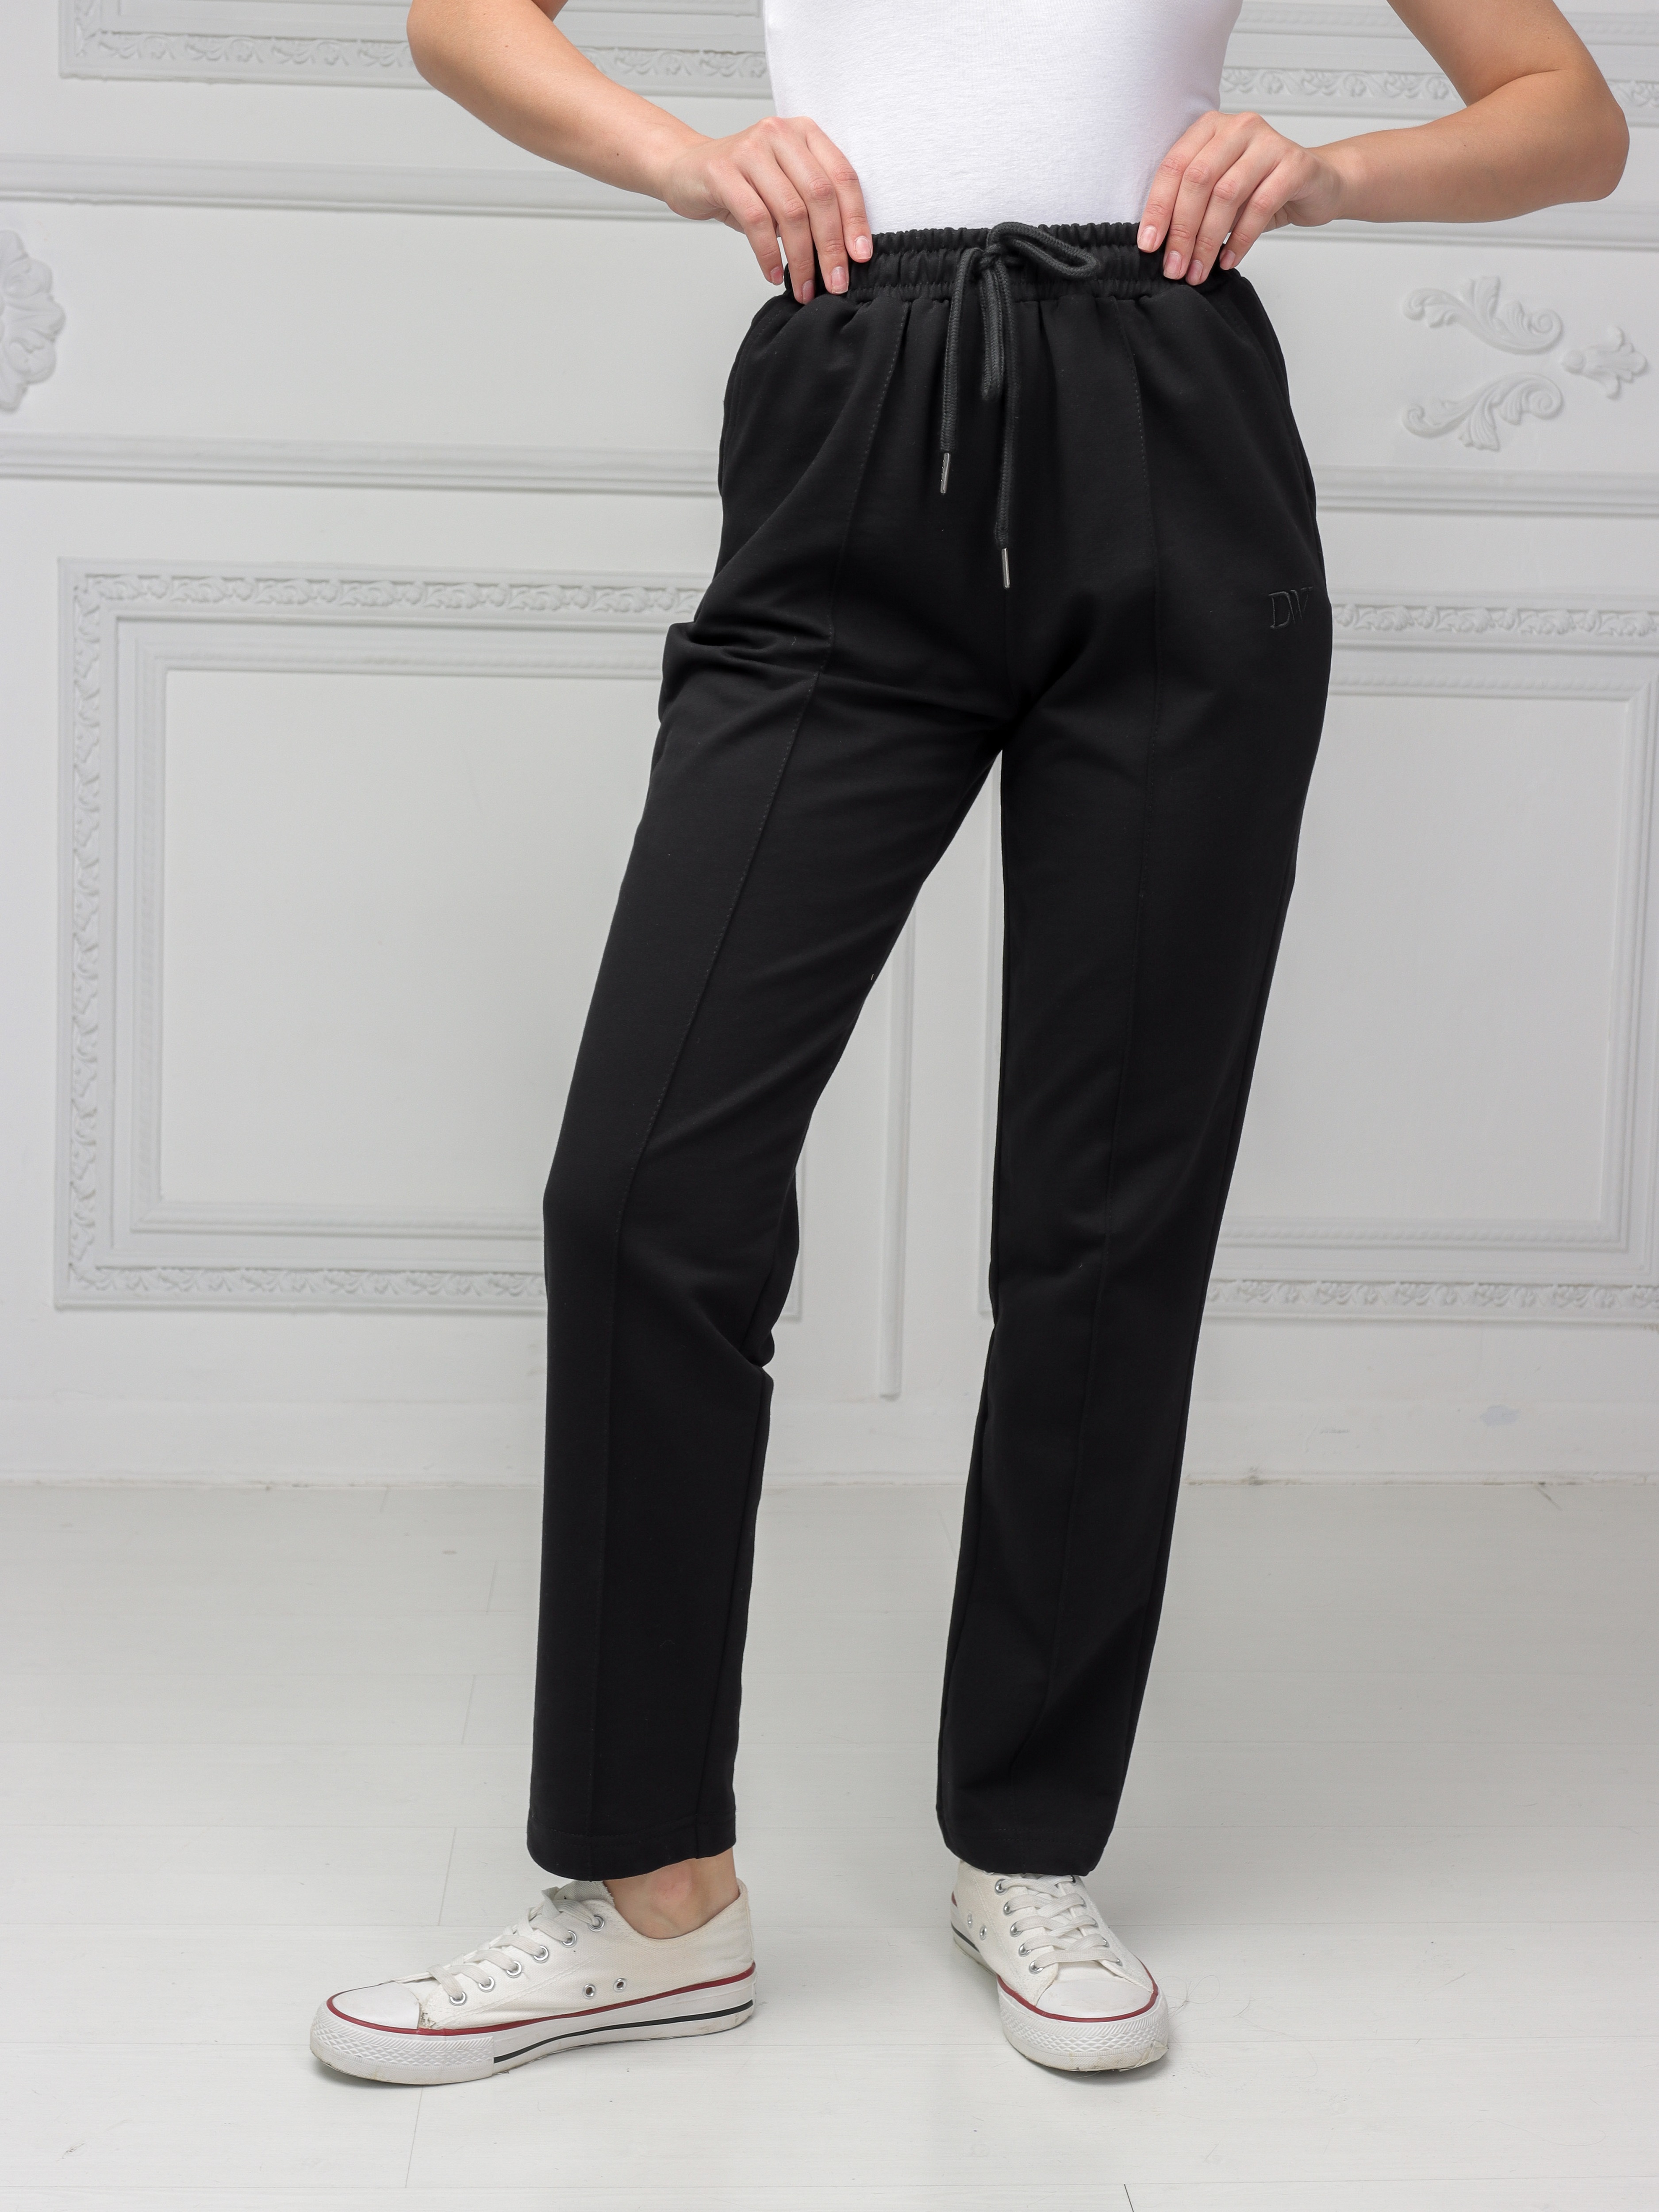 фото Спортивные брюки женские daffy world о22020б черные 42 ru